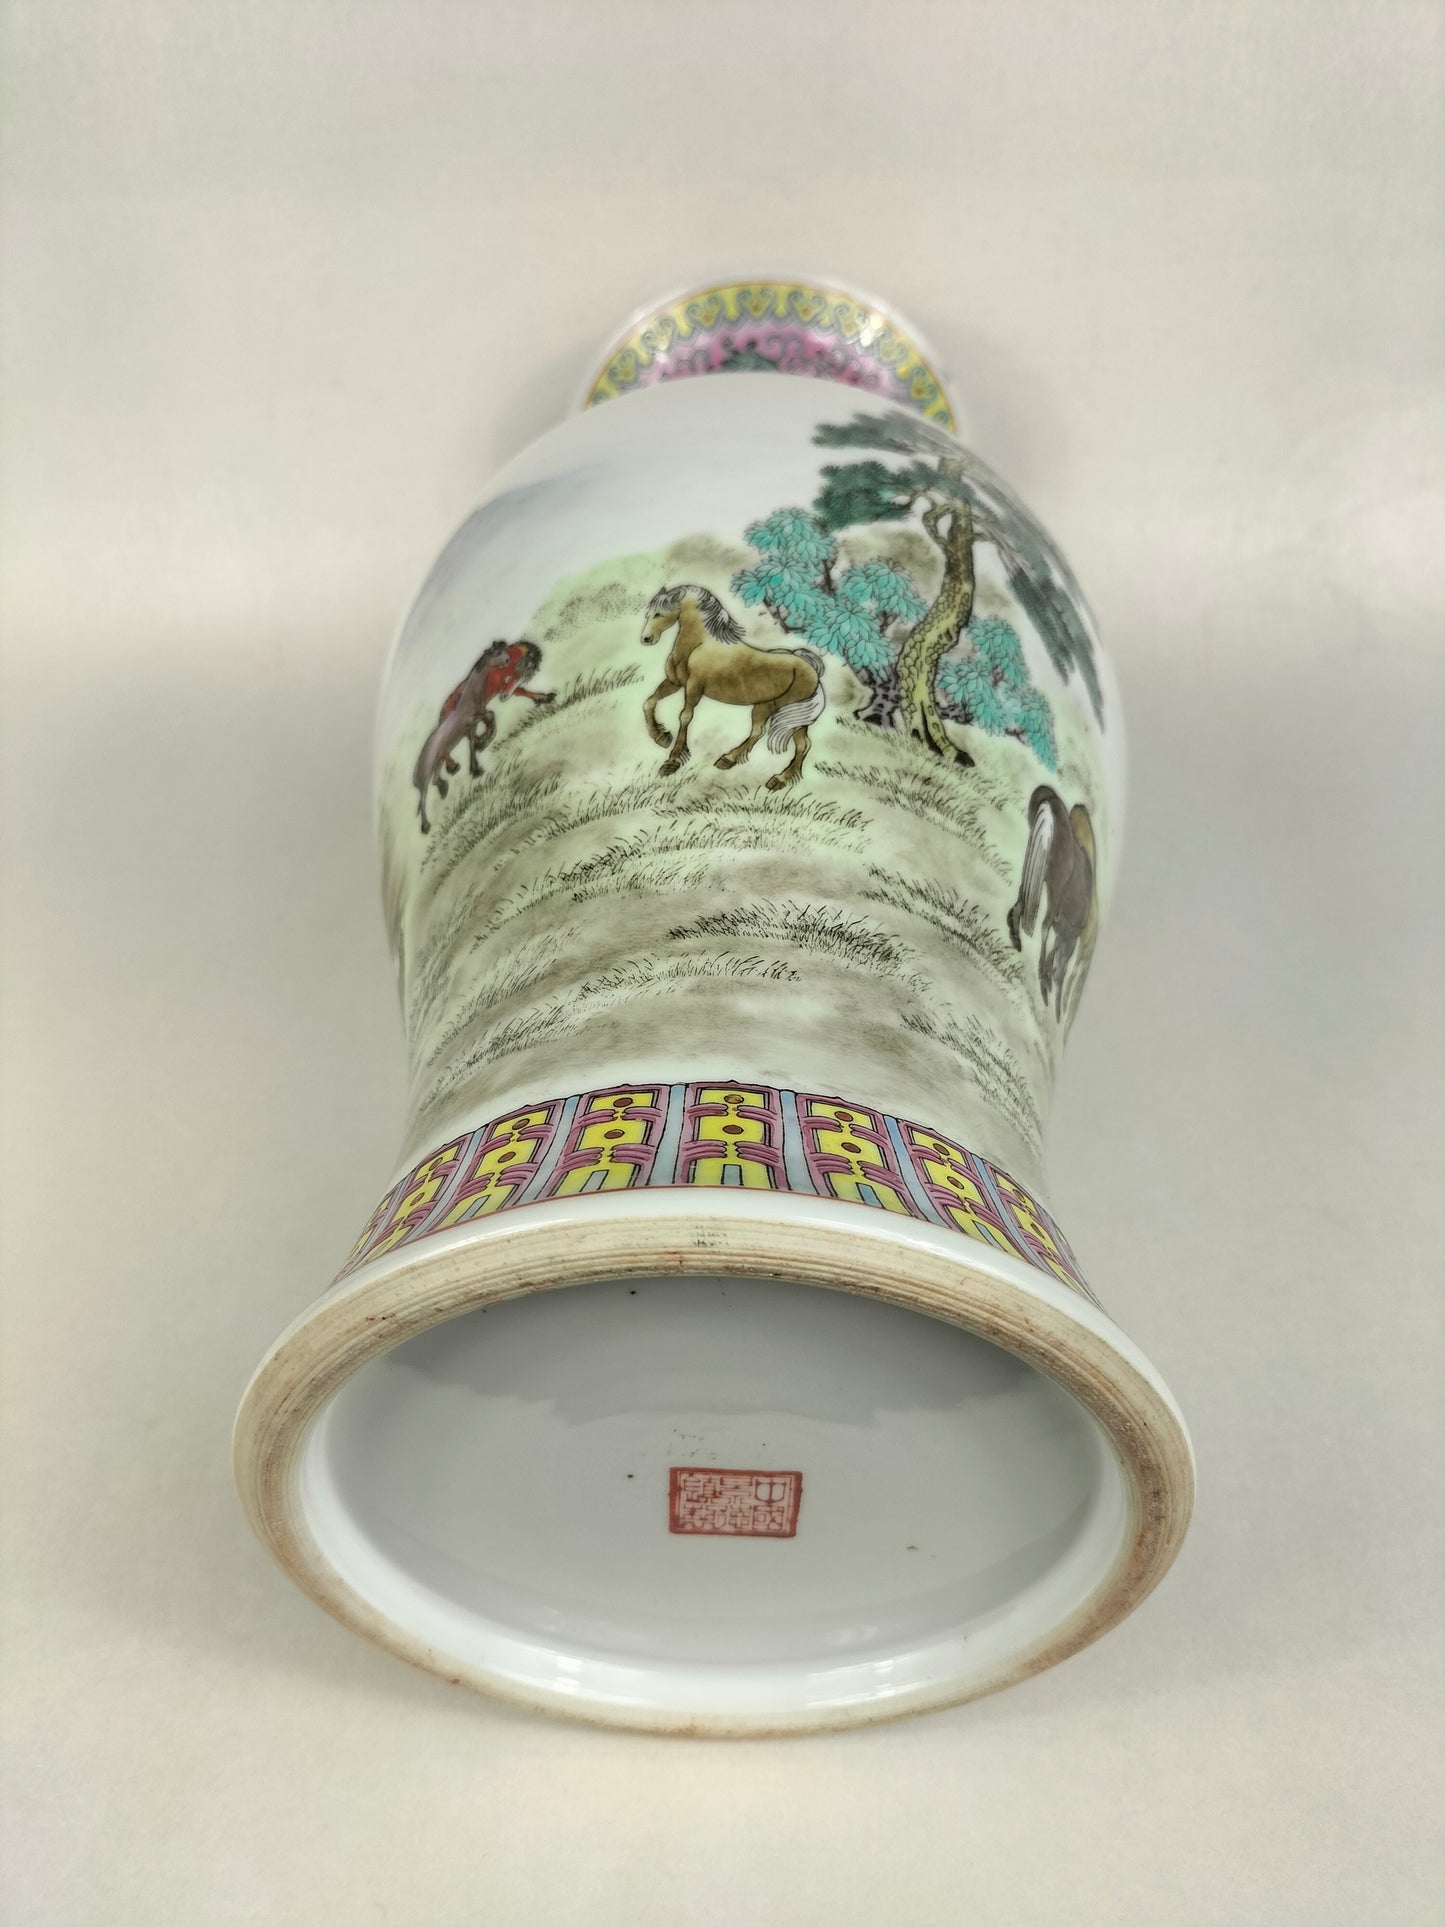 Pasu mawar famille Cina dihiasi dengan kuda // Jingdezhen - abad ke-20